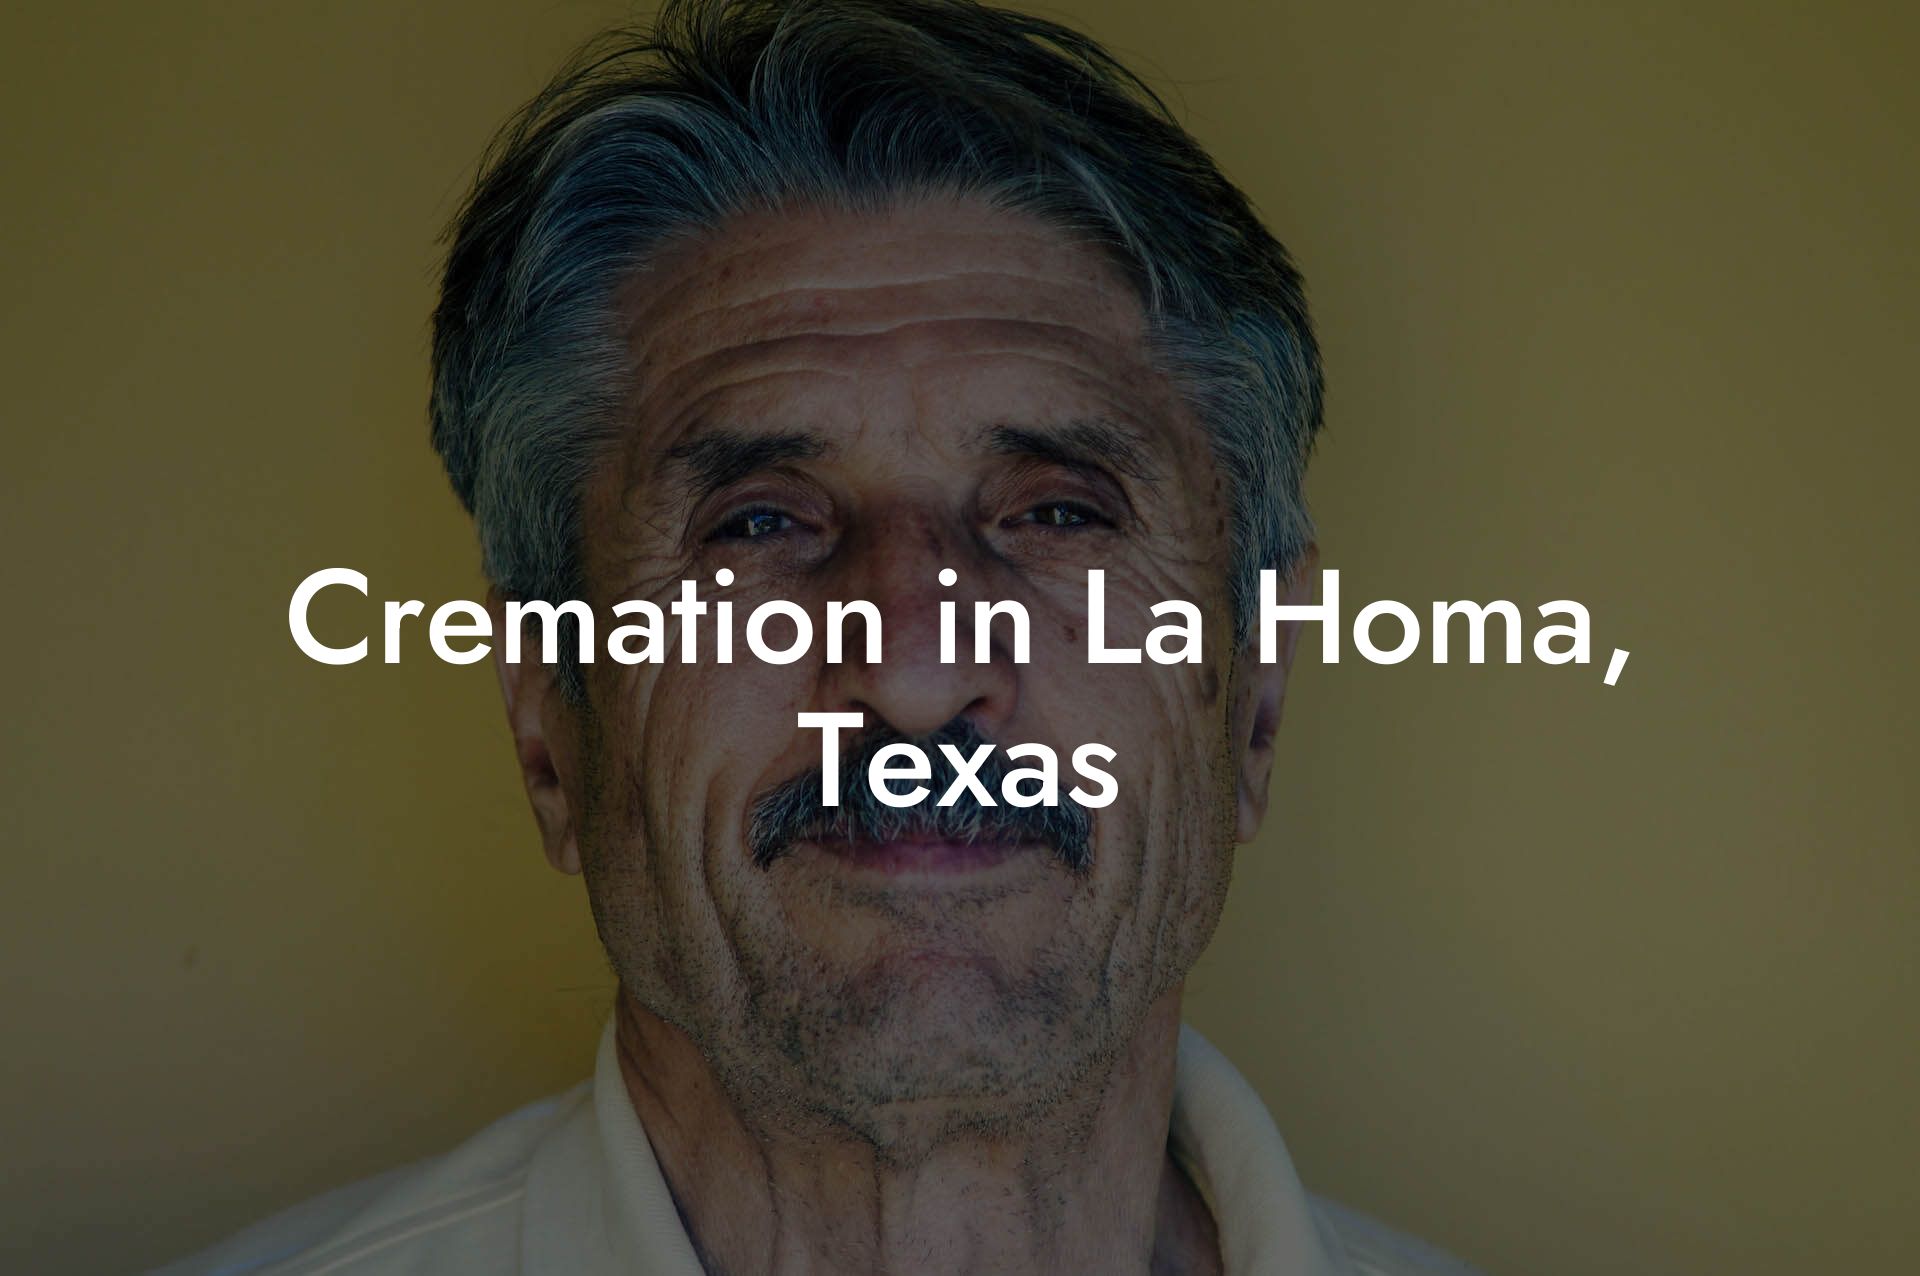 Cremation in La Homa, Texas